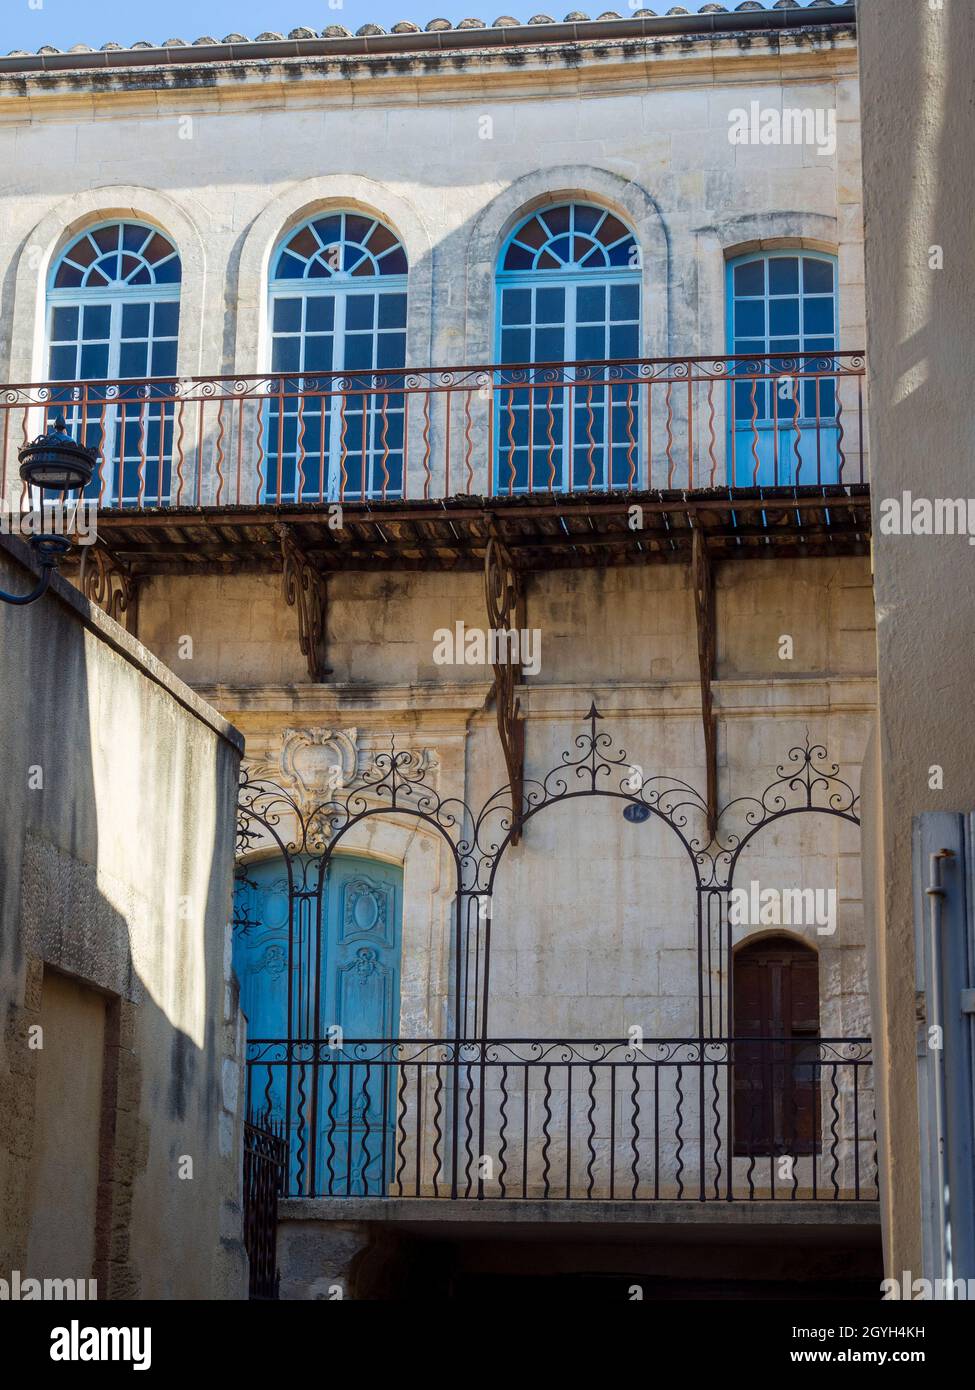 Synagoque facade of Cavaillon, France. Stock Photo